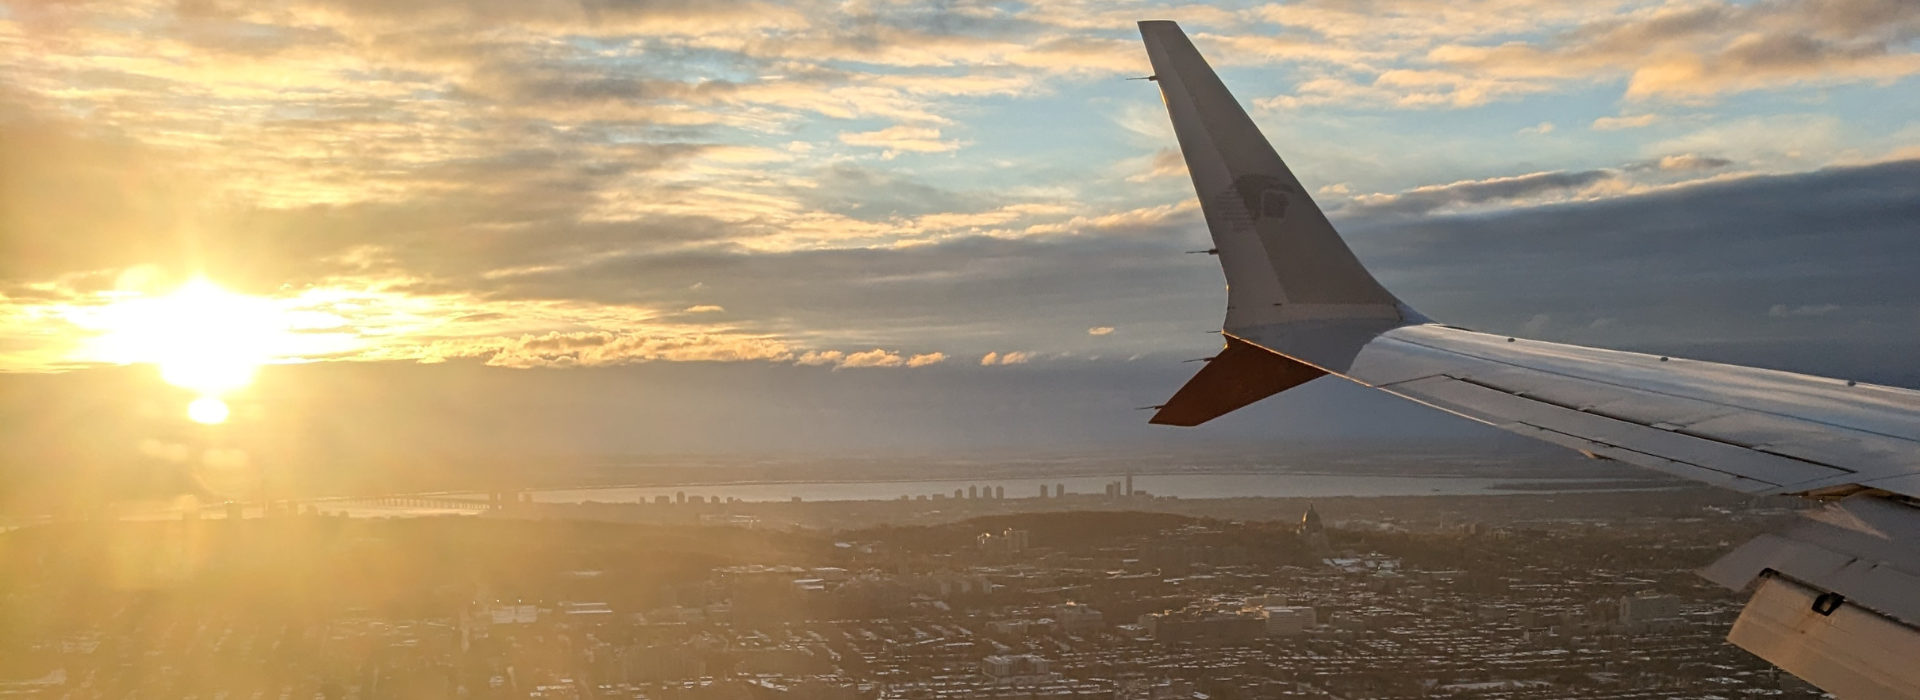 Vue aérienne au lever du soleil avec l'aile d'un avion et une silhouette urbaine.